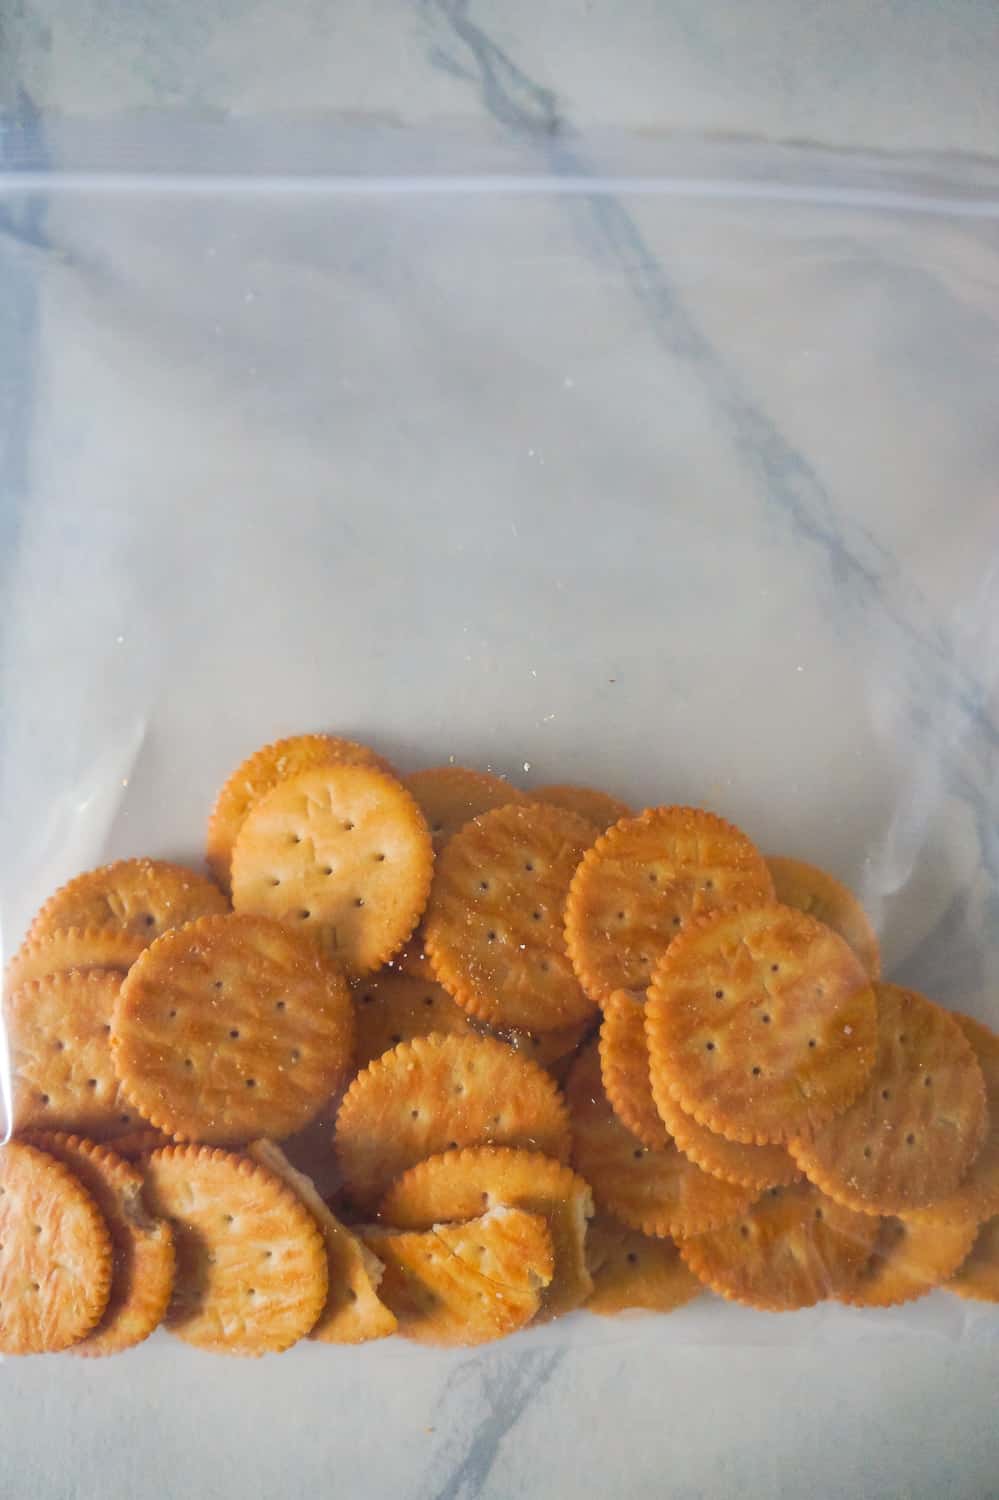 Ritz crackers in a large Ziploc bag